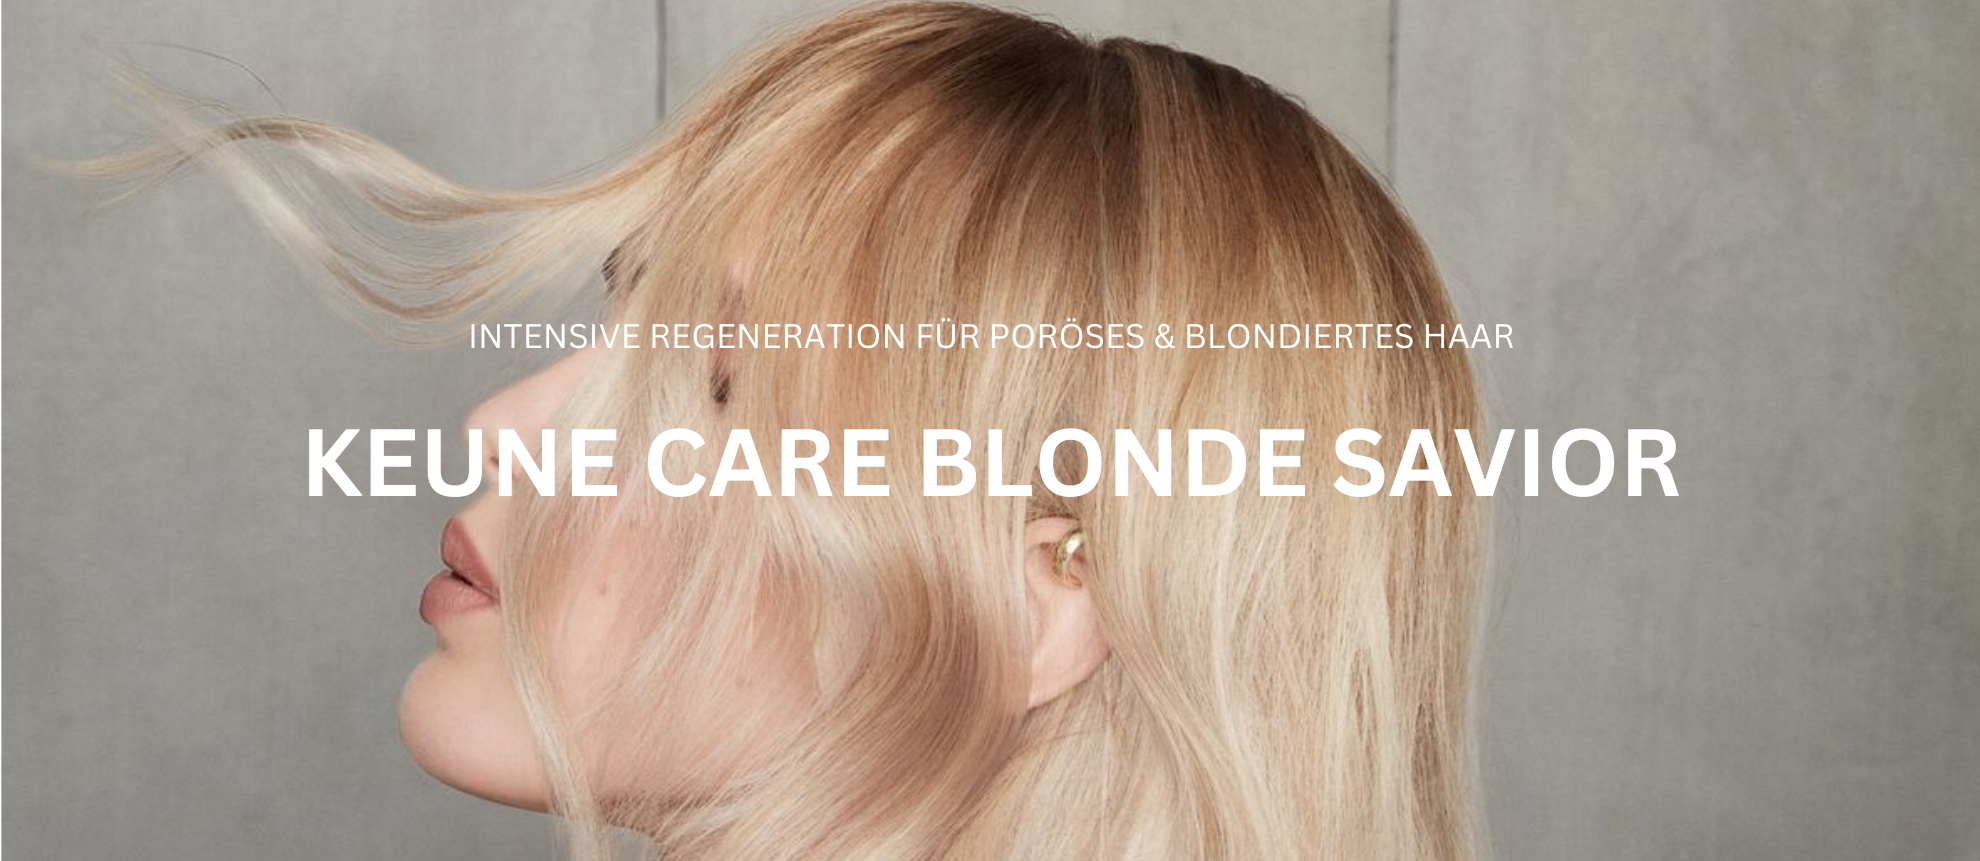 Genieße helles Blond mit Keune Care Blonde Savior - Shampoo, Haarmaske, Leave-in Treatment auf keune.ch